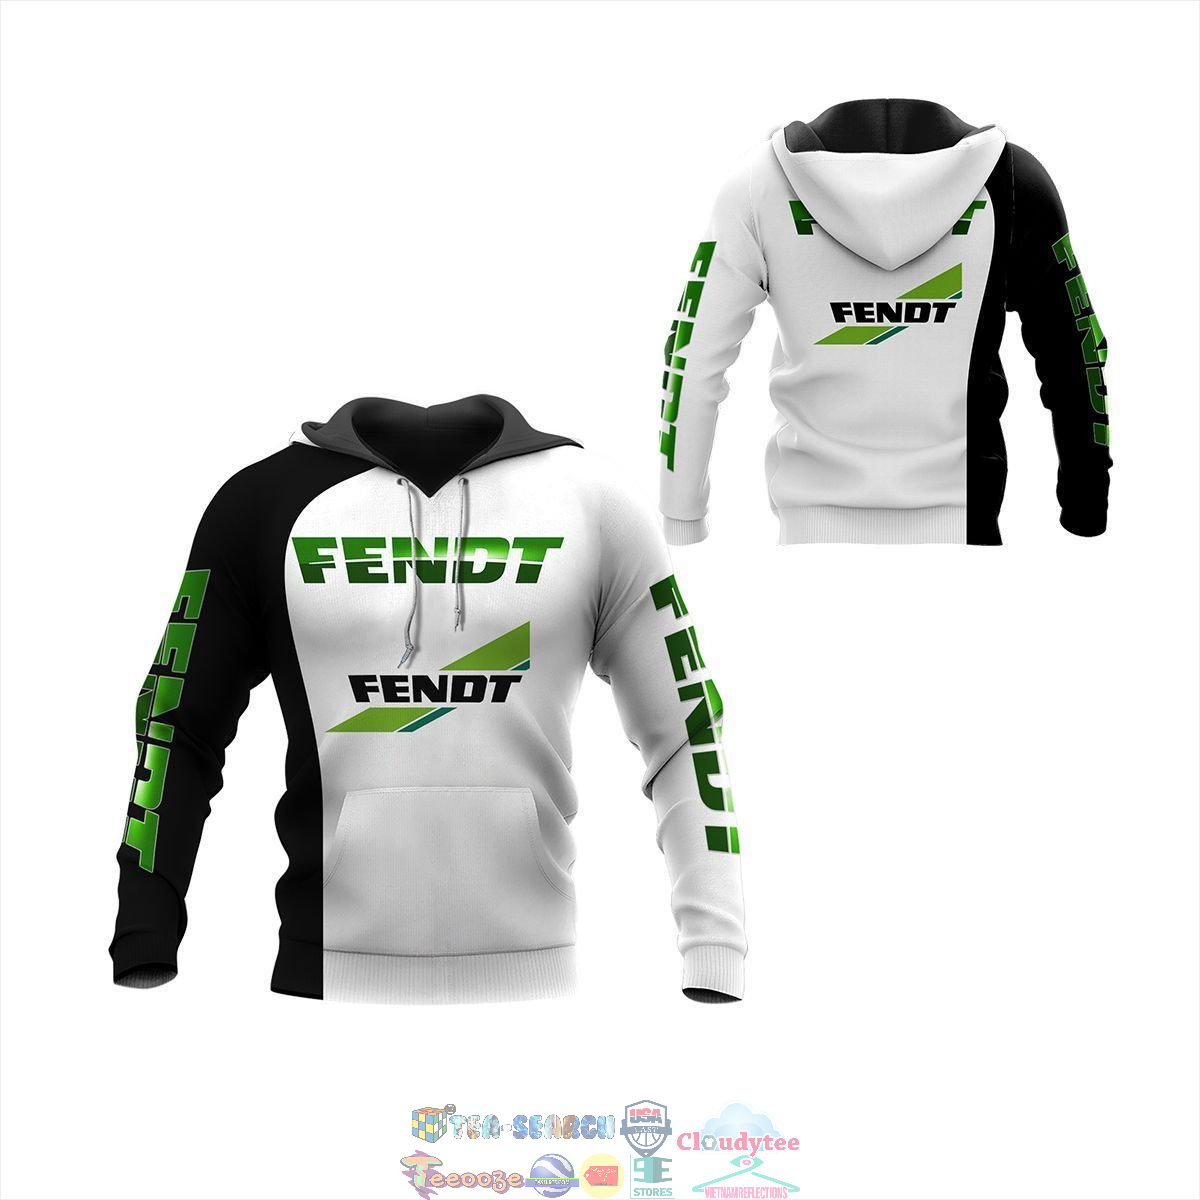 Fendt ver 2 3D hoodie and t-shirt – Saleoff